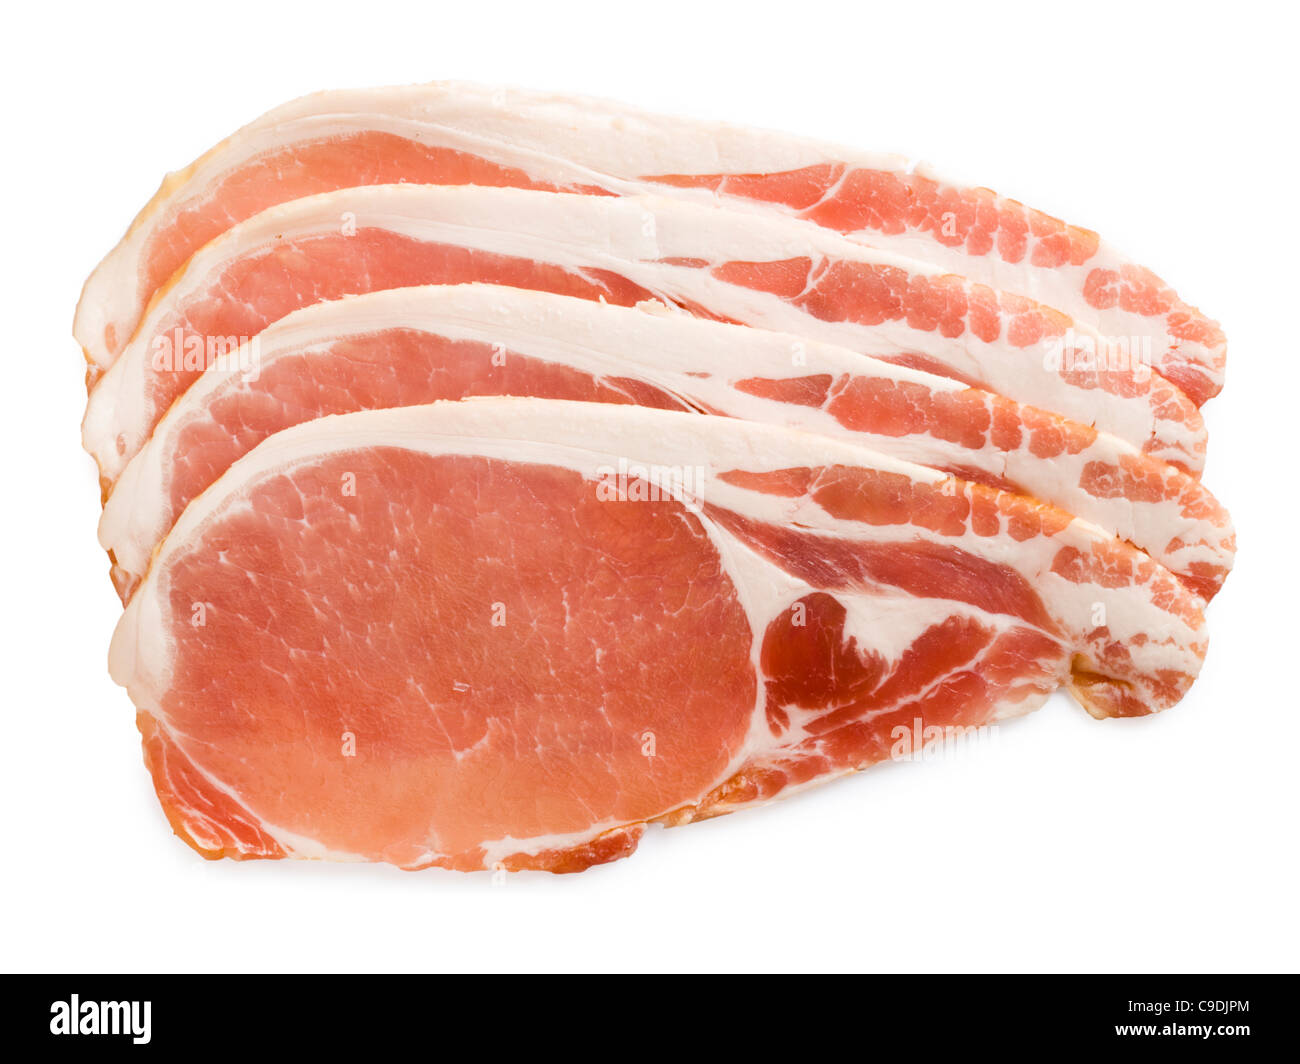 Bacon rashers. Stock Photo